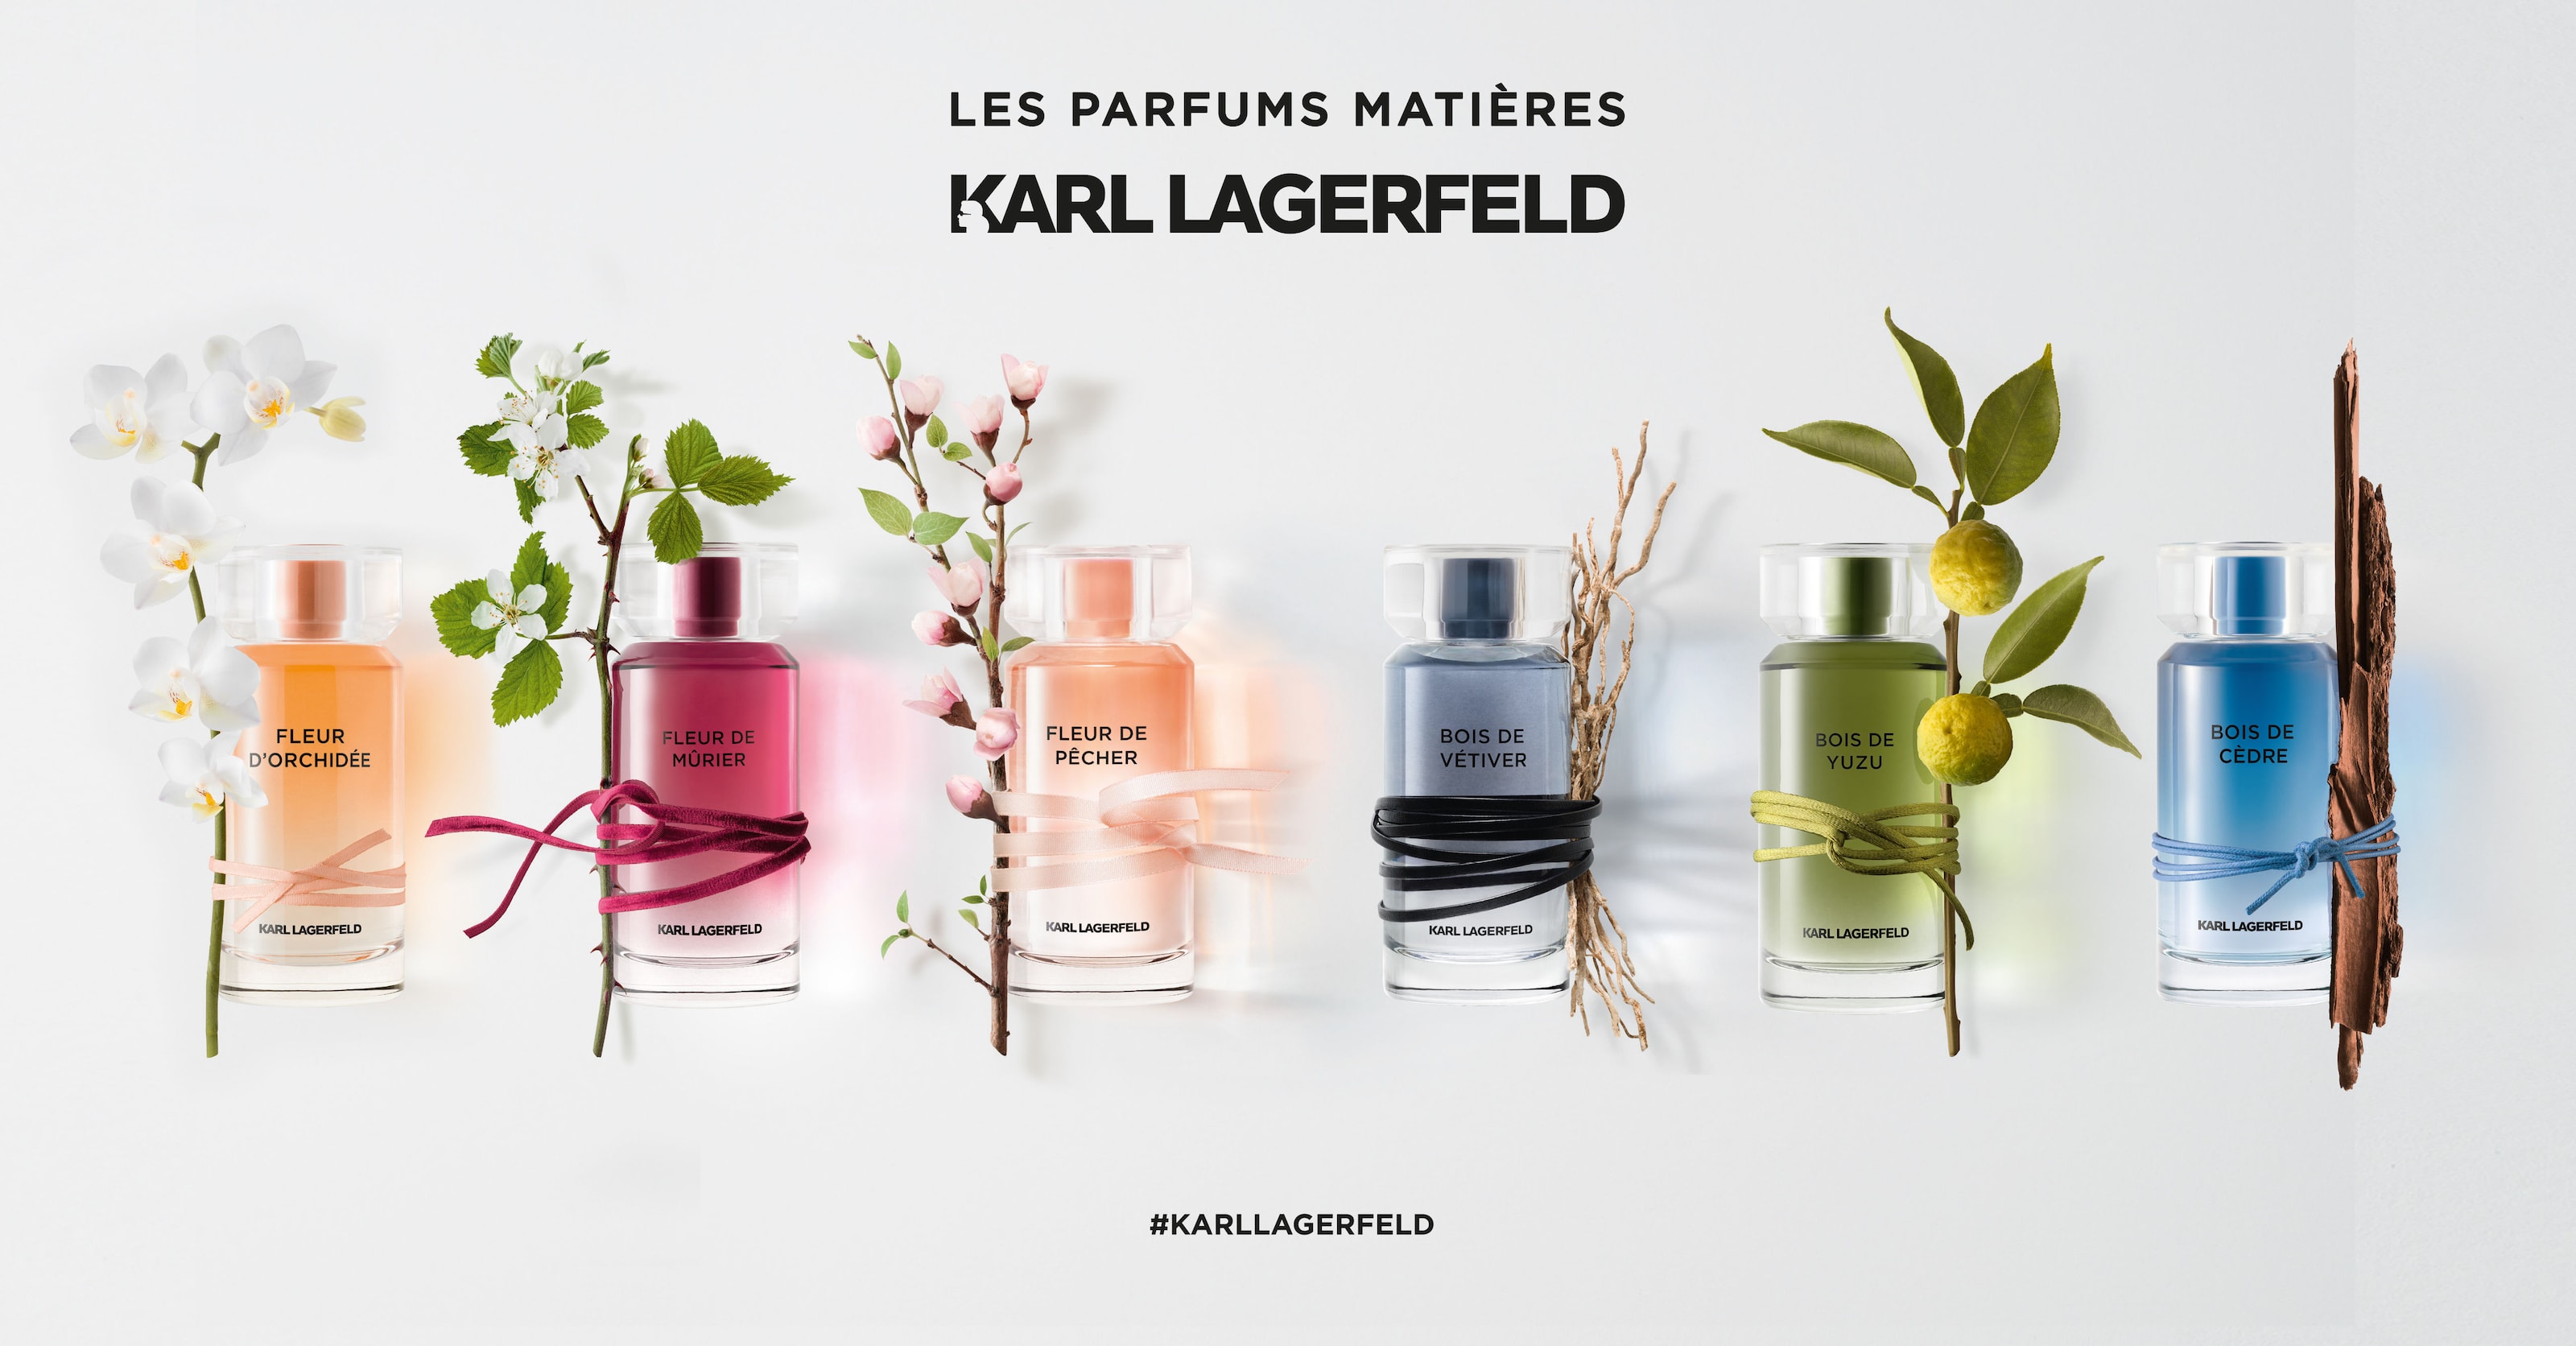 Флер де зе. Karl Lagerfeld fleur d'Orchidee. Fleur d'Orchidee Karl Lagerfeld 50 мл. Karl Lagerfeld fleur de Murier [w] EDP - 100ml. Karl Lagerfeld Fragrance.